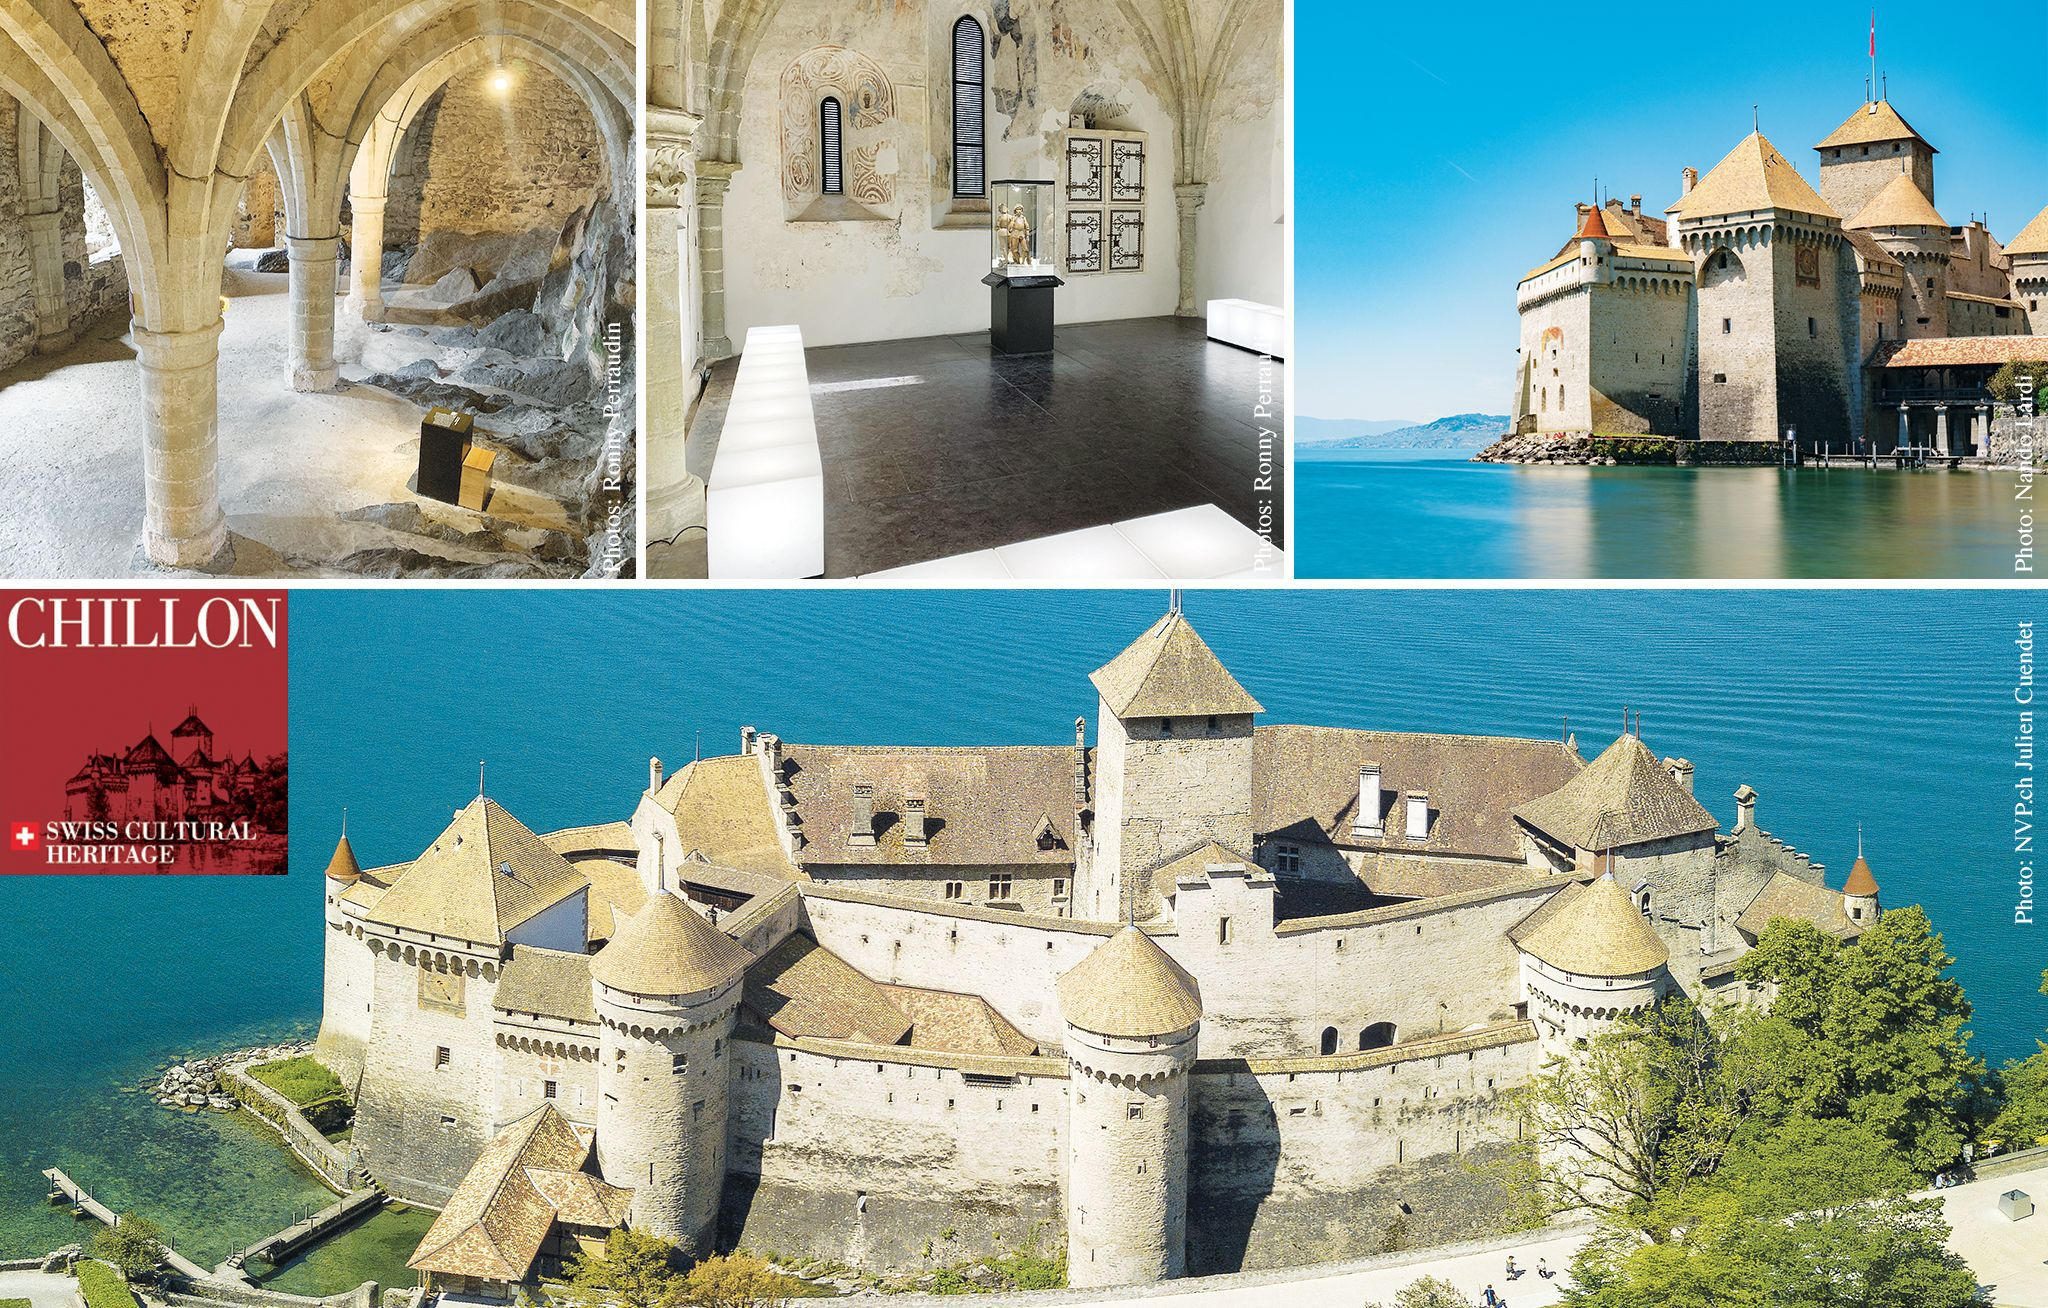 Chillon Le château médiéval et romantique à visiter absolument magazine cChic Suisse